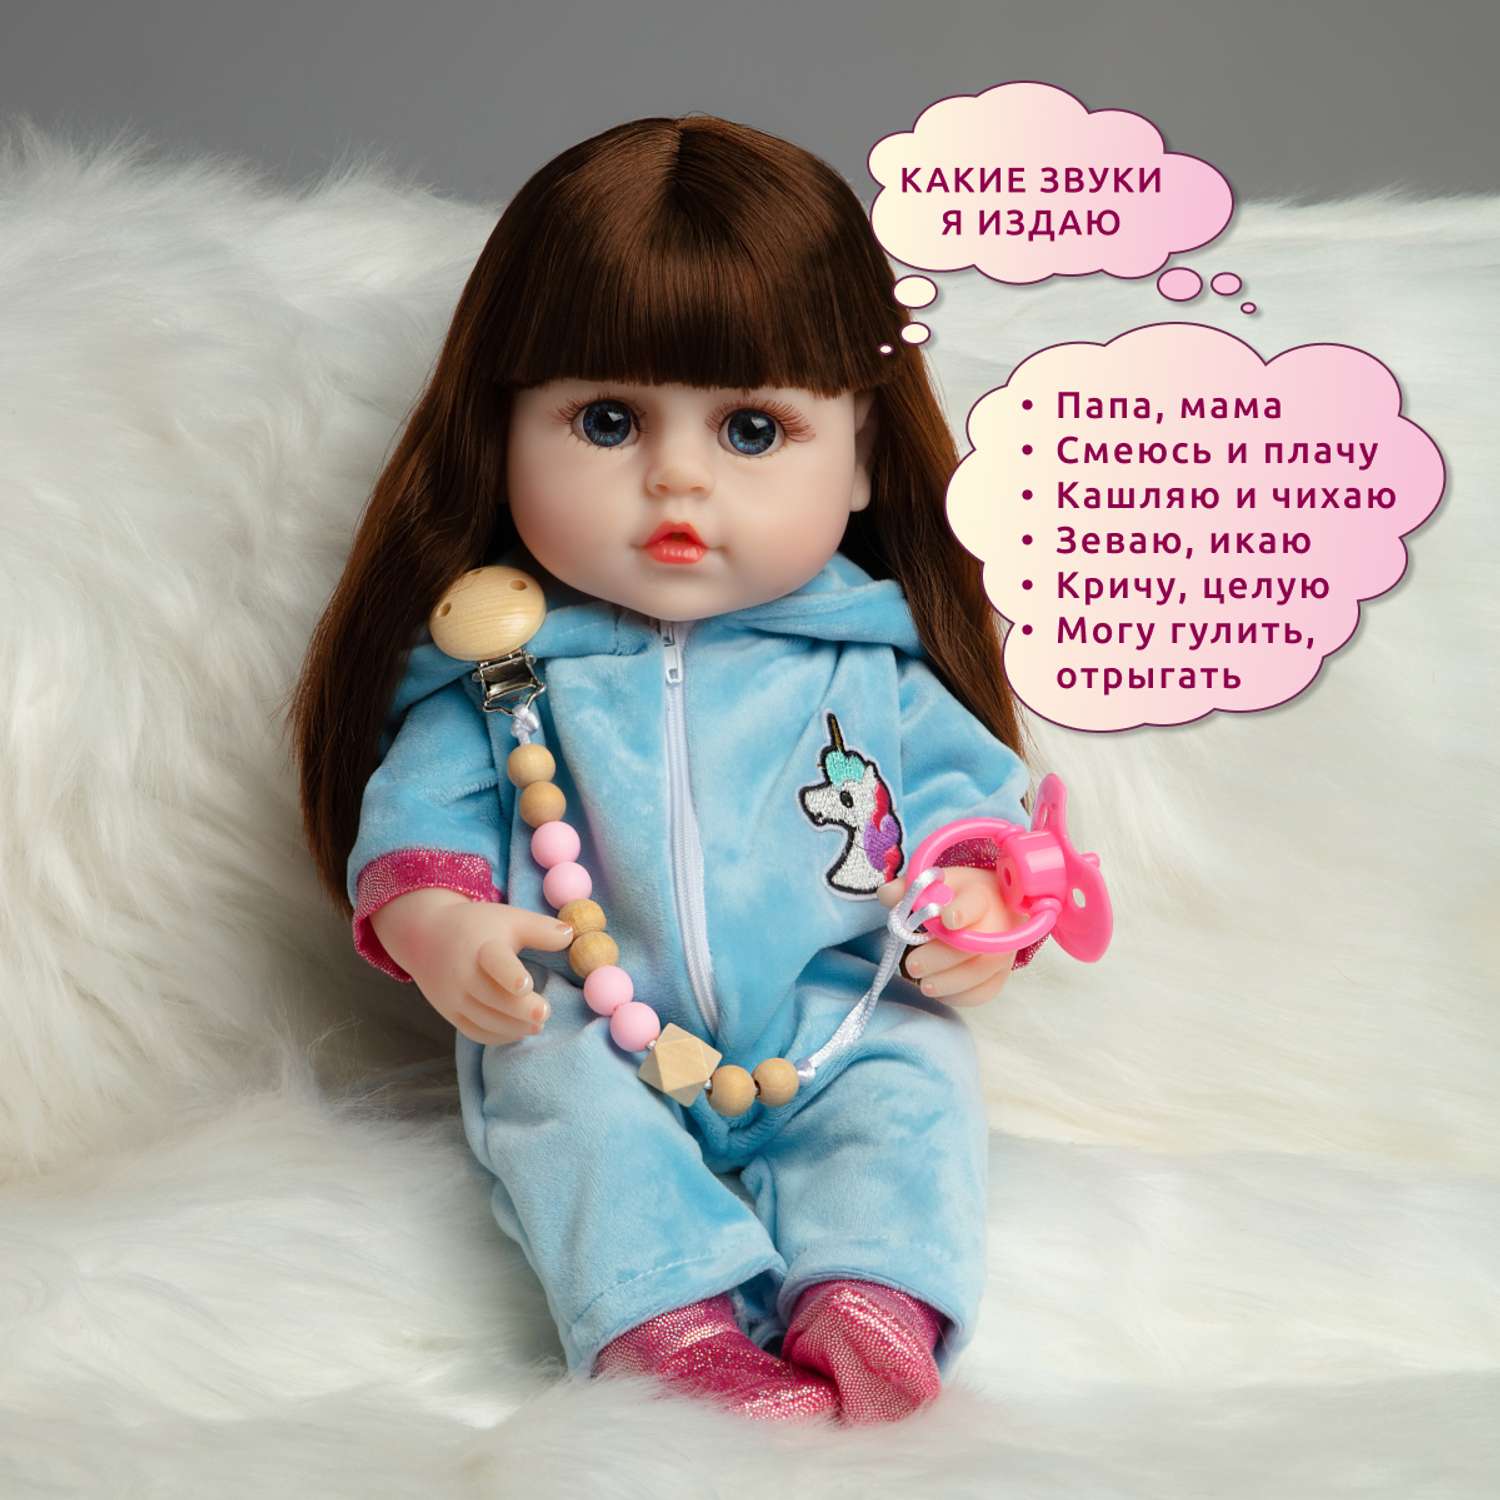 Кукла Реборн QA BABY Марта девочка интерактивная Пупс набор игрушки для ванной для девочки 38 см 3806 - фото 3